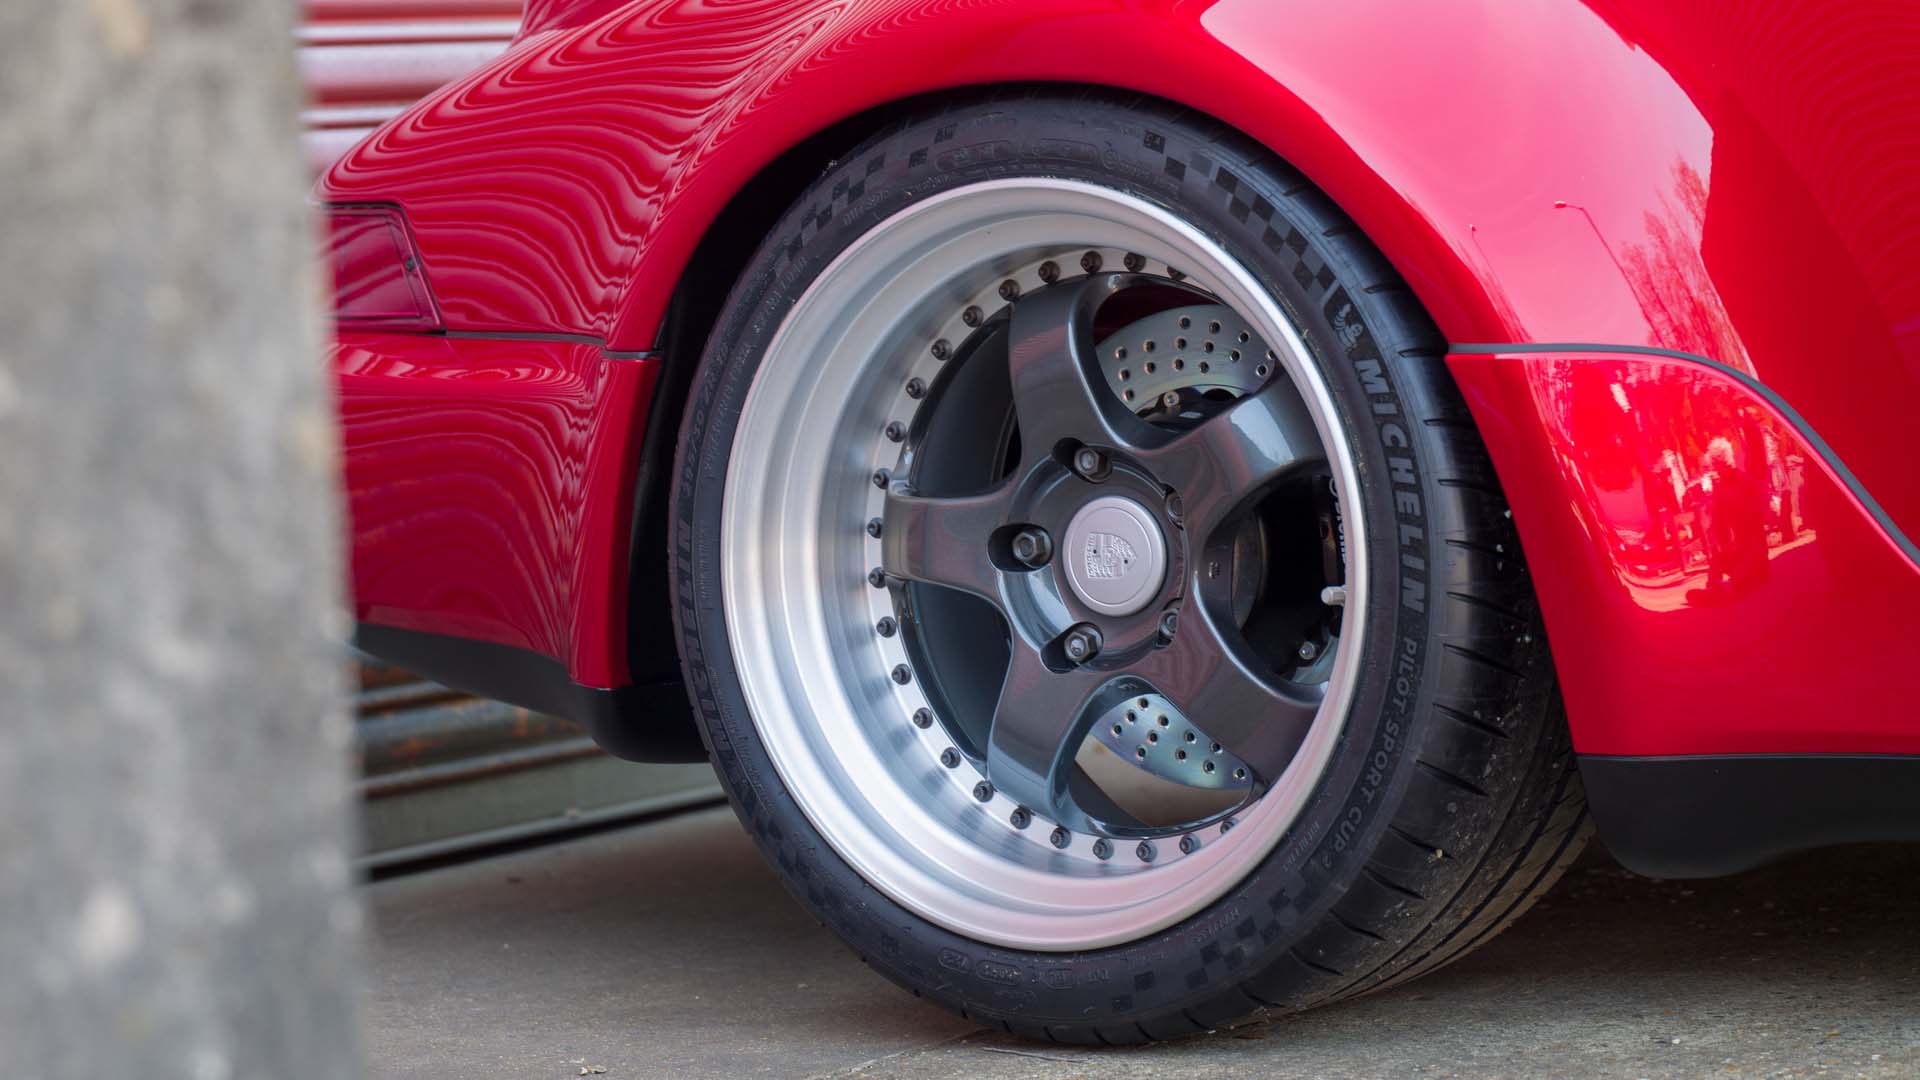 چرخ خودروی برقی پورشه 911 اوررتی / Everrati Porsche 911 EV  قرمز رنگ